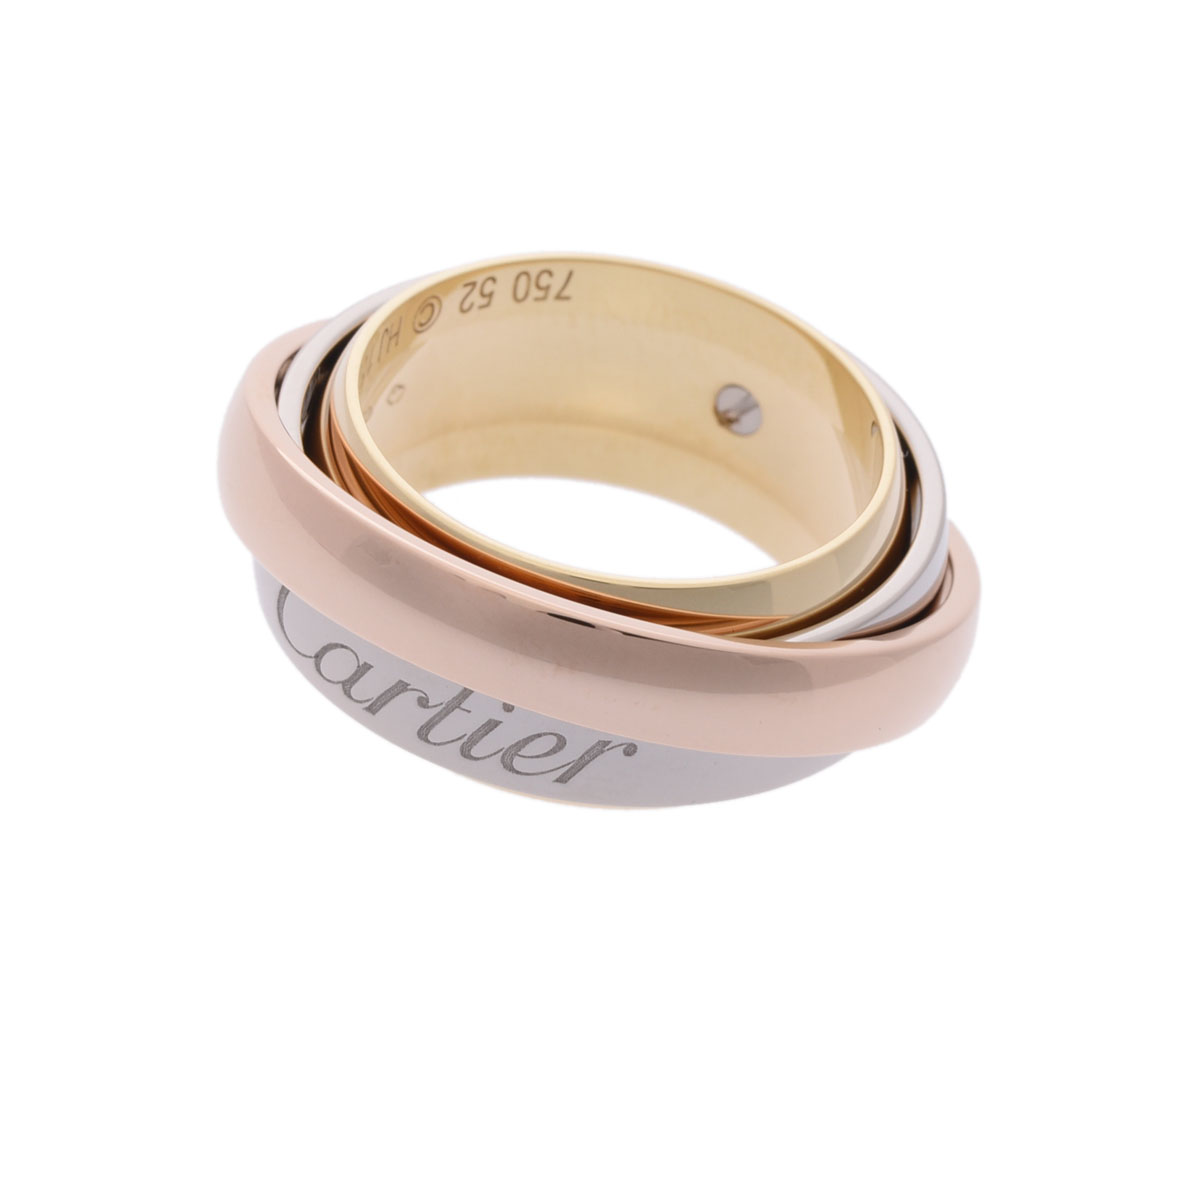 カルティエ シグネチャー リング#52 11.5号 750 K18WG ホワイトゴールド レディース 指輪 ジュエリー CARTIER